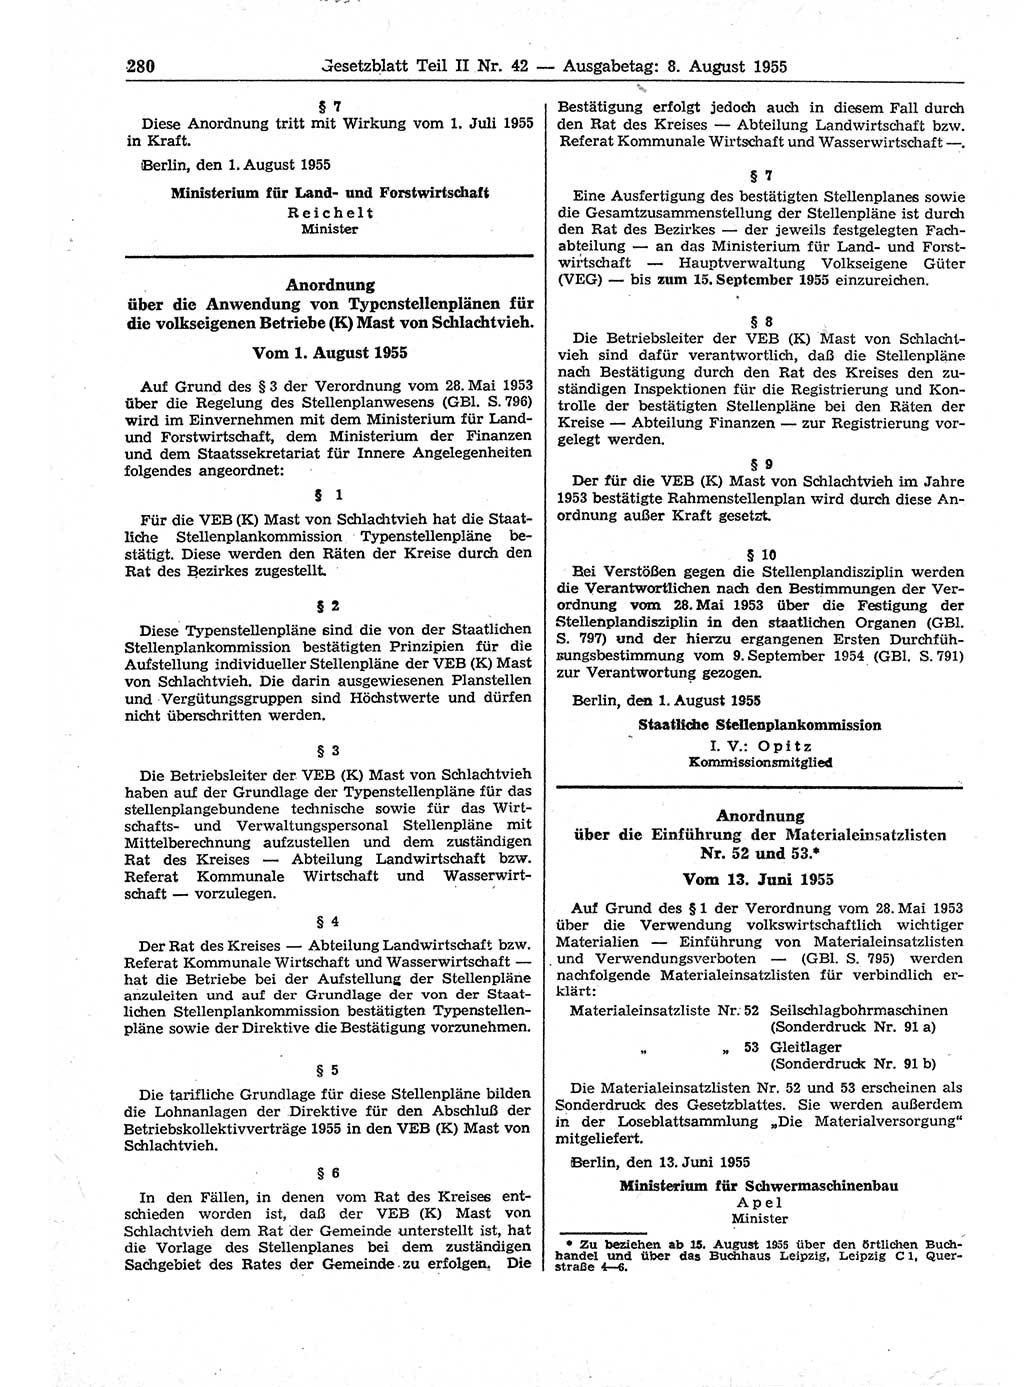 Gesetzblatt (GBl.) der Deutschen Demokratischen Republik (DDR) Teil ⅠⅠ 1955, Seite 280 (GBl. DDR ⅠⅠ 1955, S. 280)